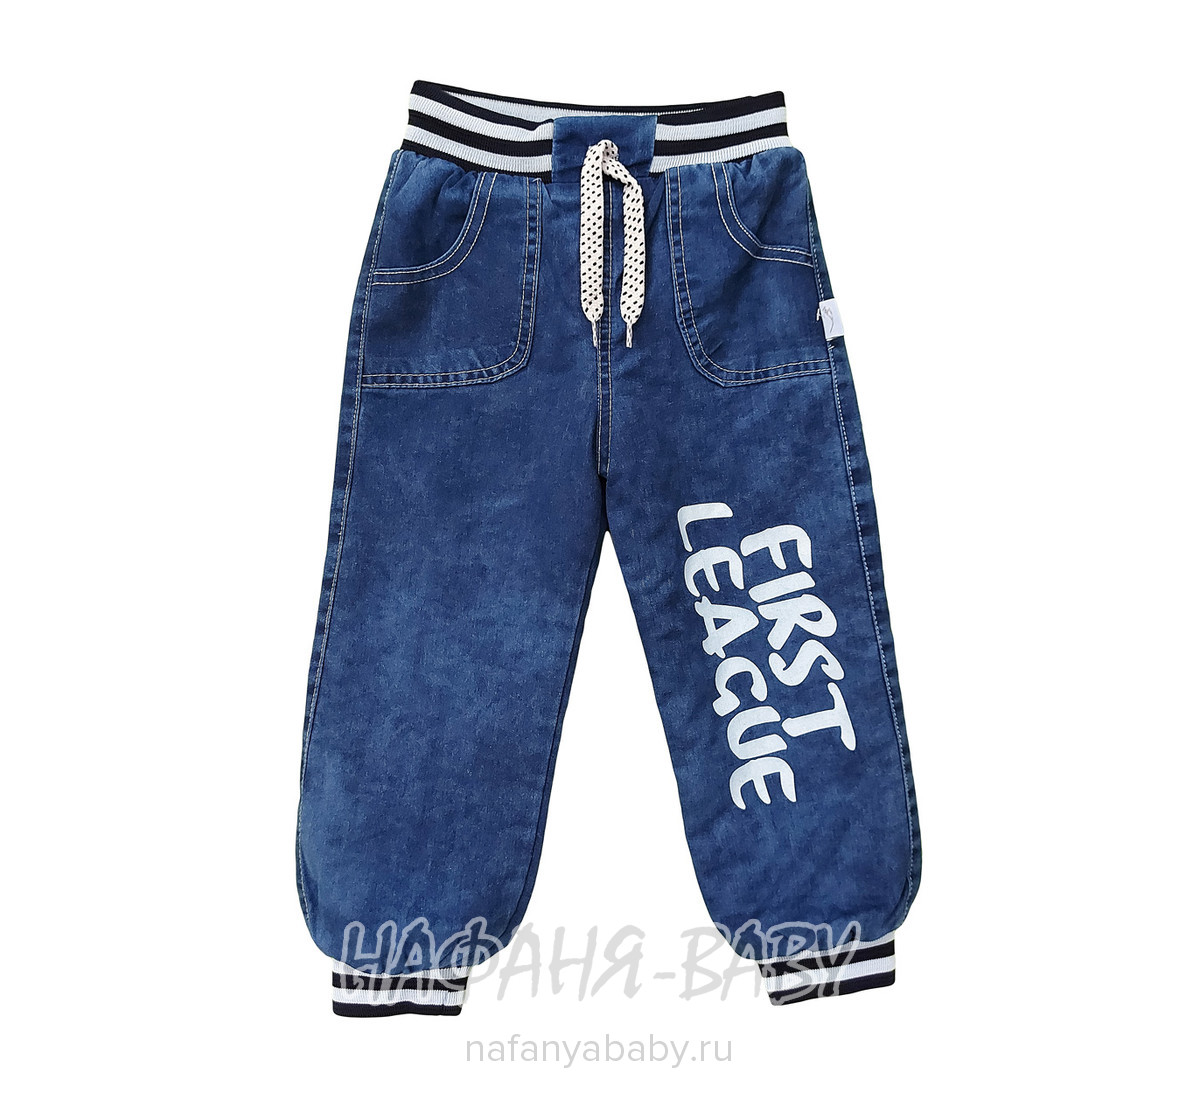 Детские теплые джинсы для мальчика AKIRA арт: 2531, 1-4 года, 5-9 лет, оптом Турция